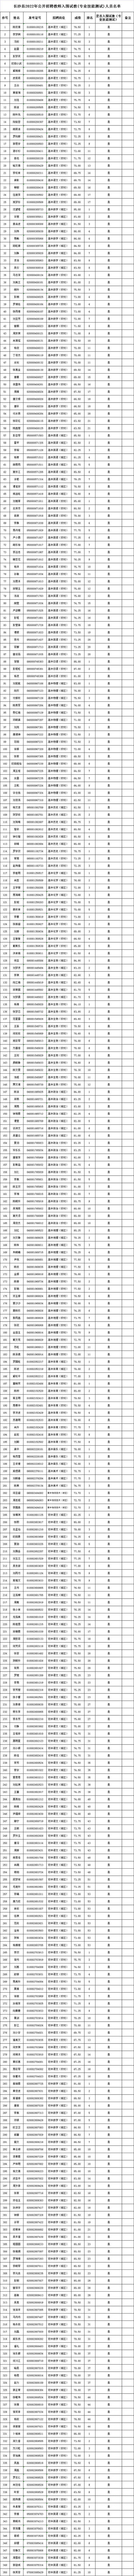 2022年长沙县公开招聘（选调）教师入围试教（面试、专业技能测试）人员名单公示(图3)